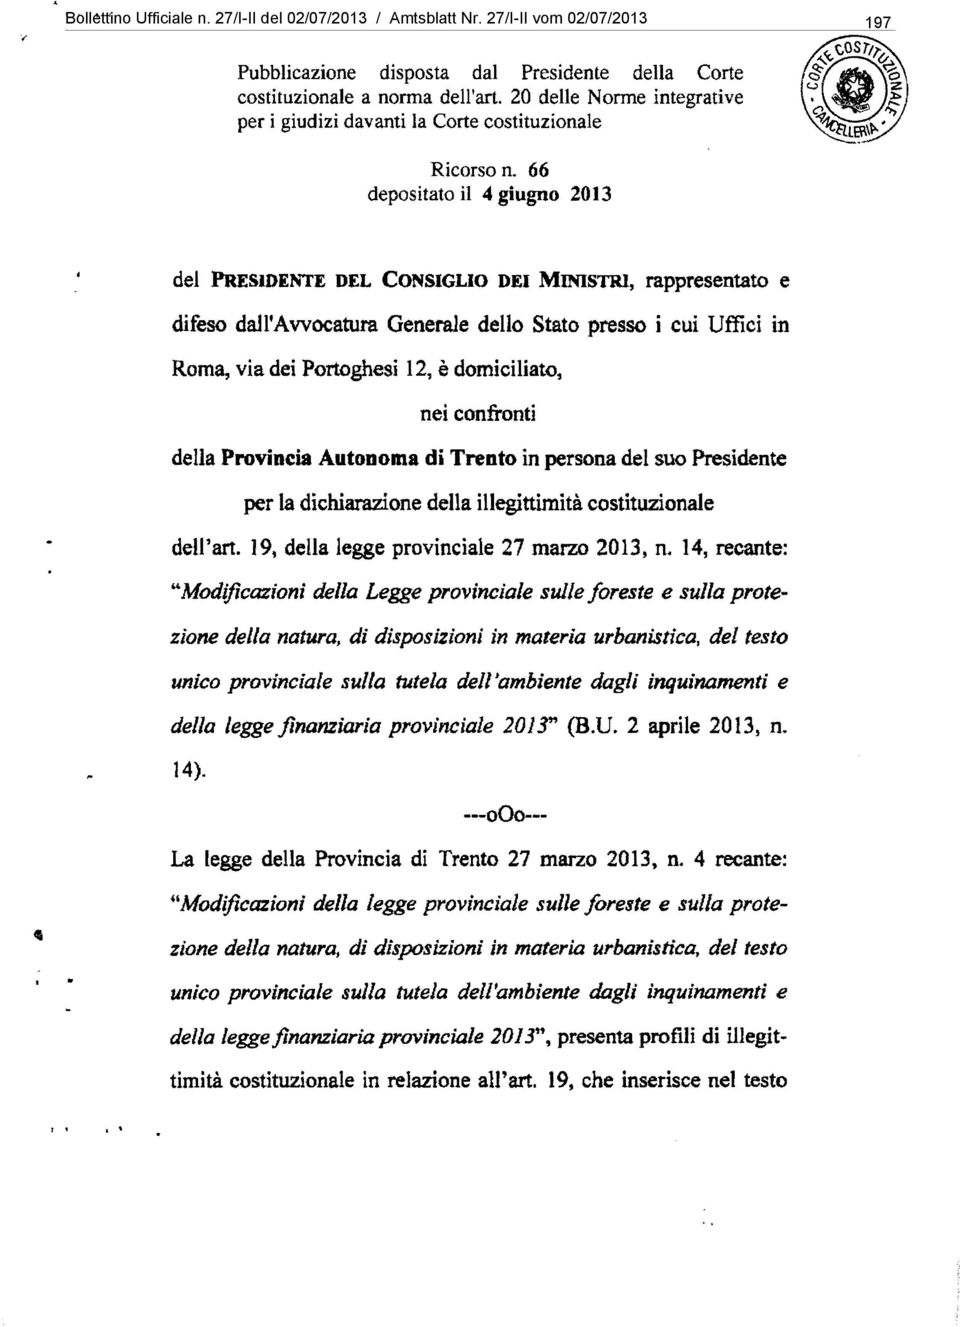 66 depositato il 4 giugno 2013 del PREsIDENTE DEL CONSIGLIO DEI MINISTRI, rappresentato e difeso dall'avvocatura Generale dello Stato presso i cui Uffici in Roma, via dei Portoghesi 12, è